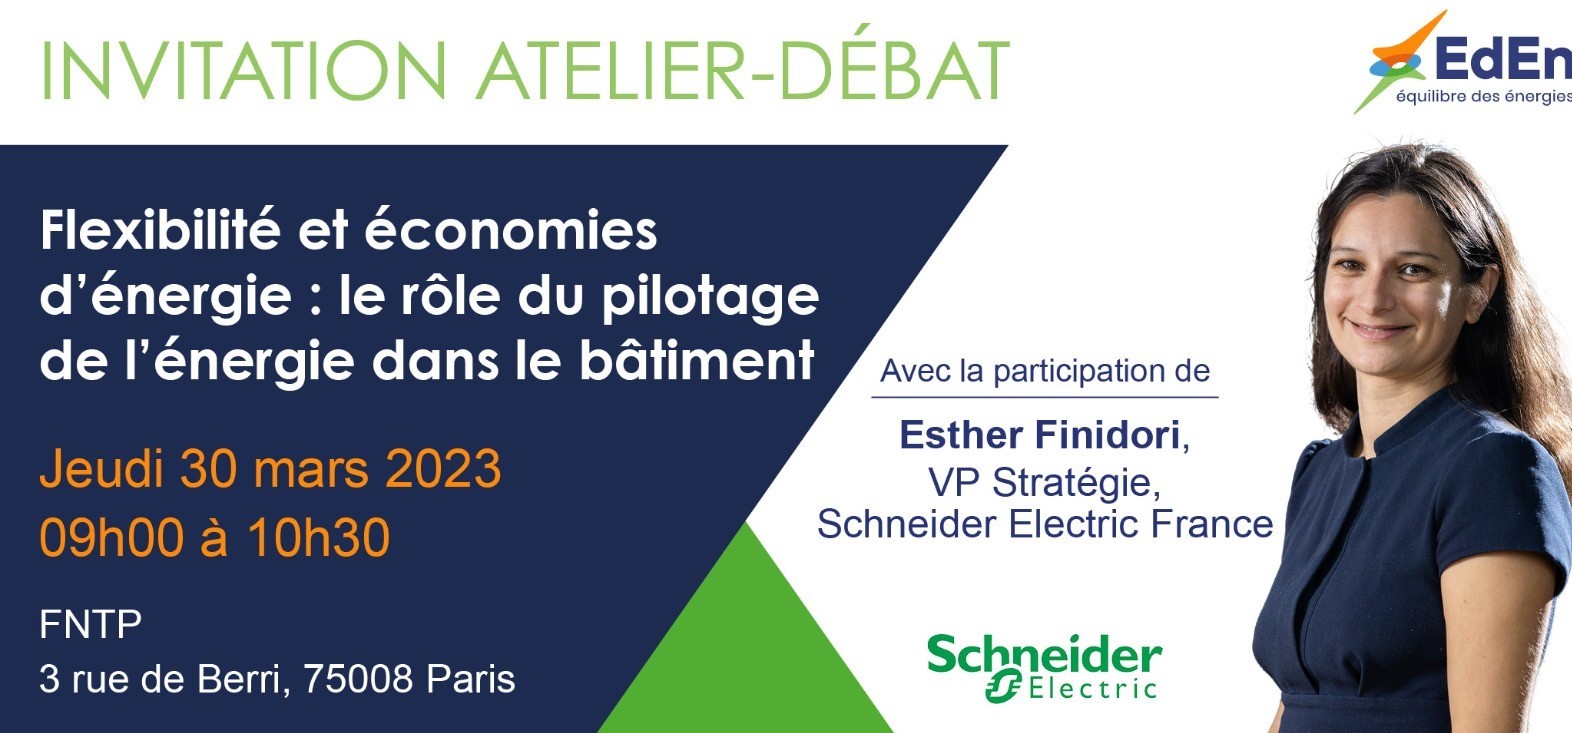 Atelier-Débat Équilibre Des Énergies – 30 Mars 2023